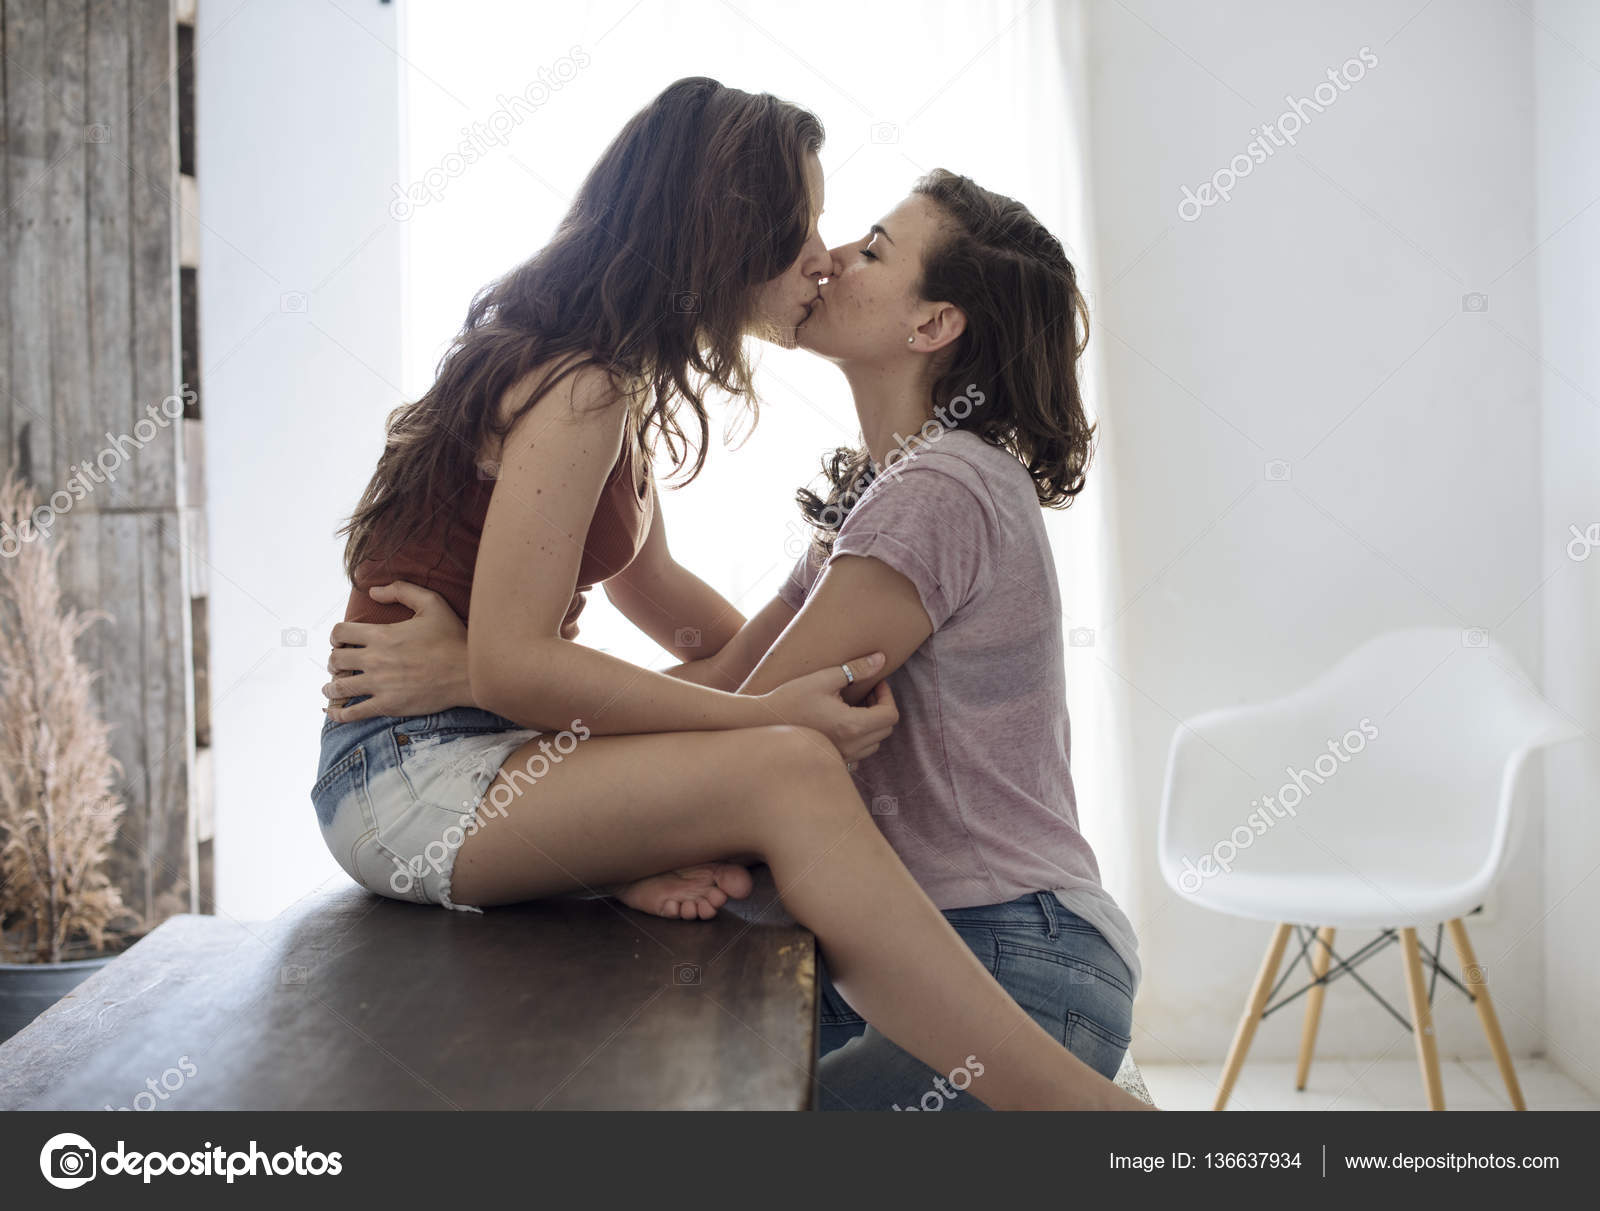 Lesbians Making